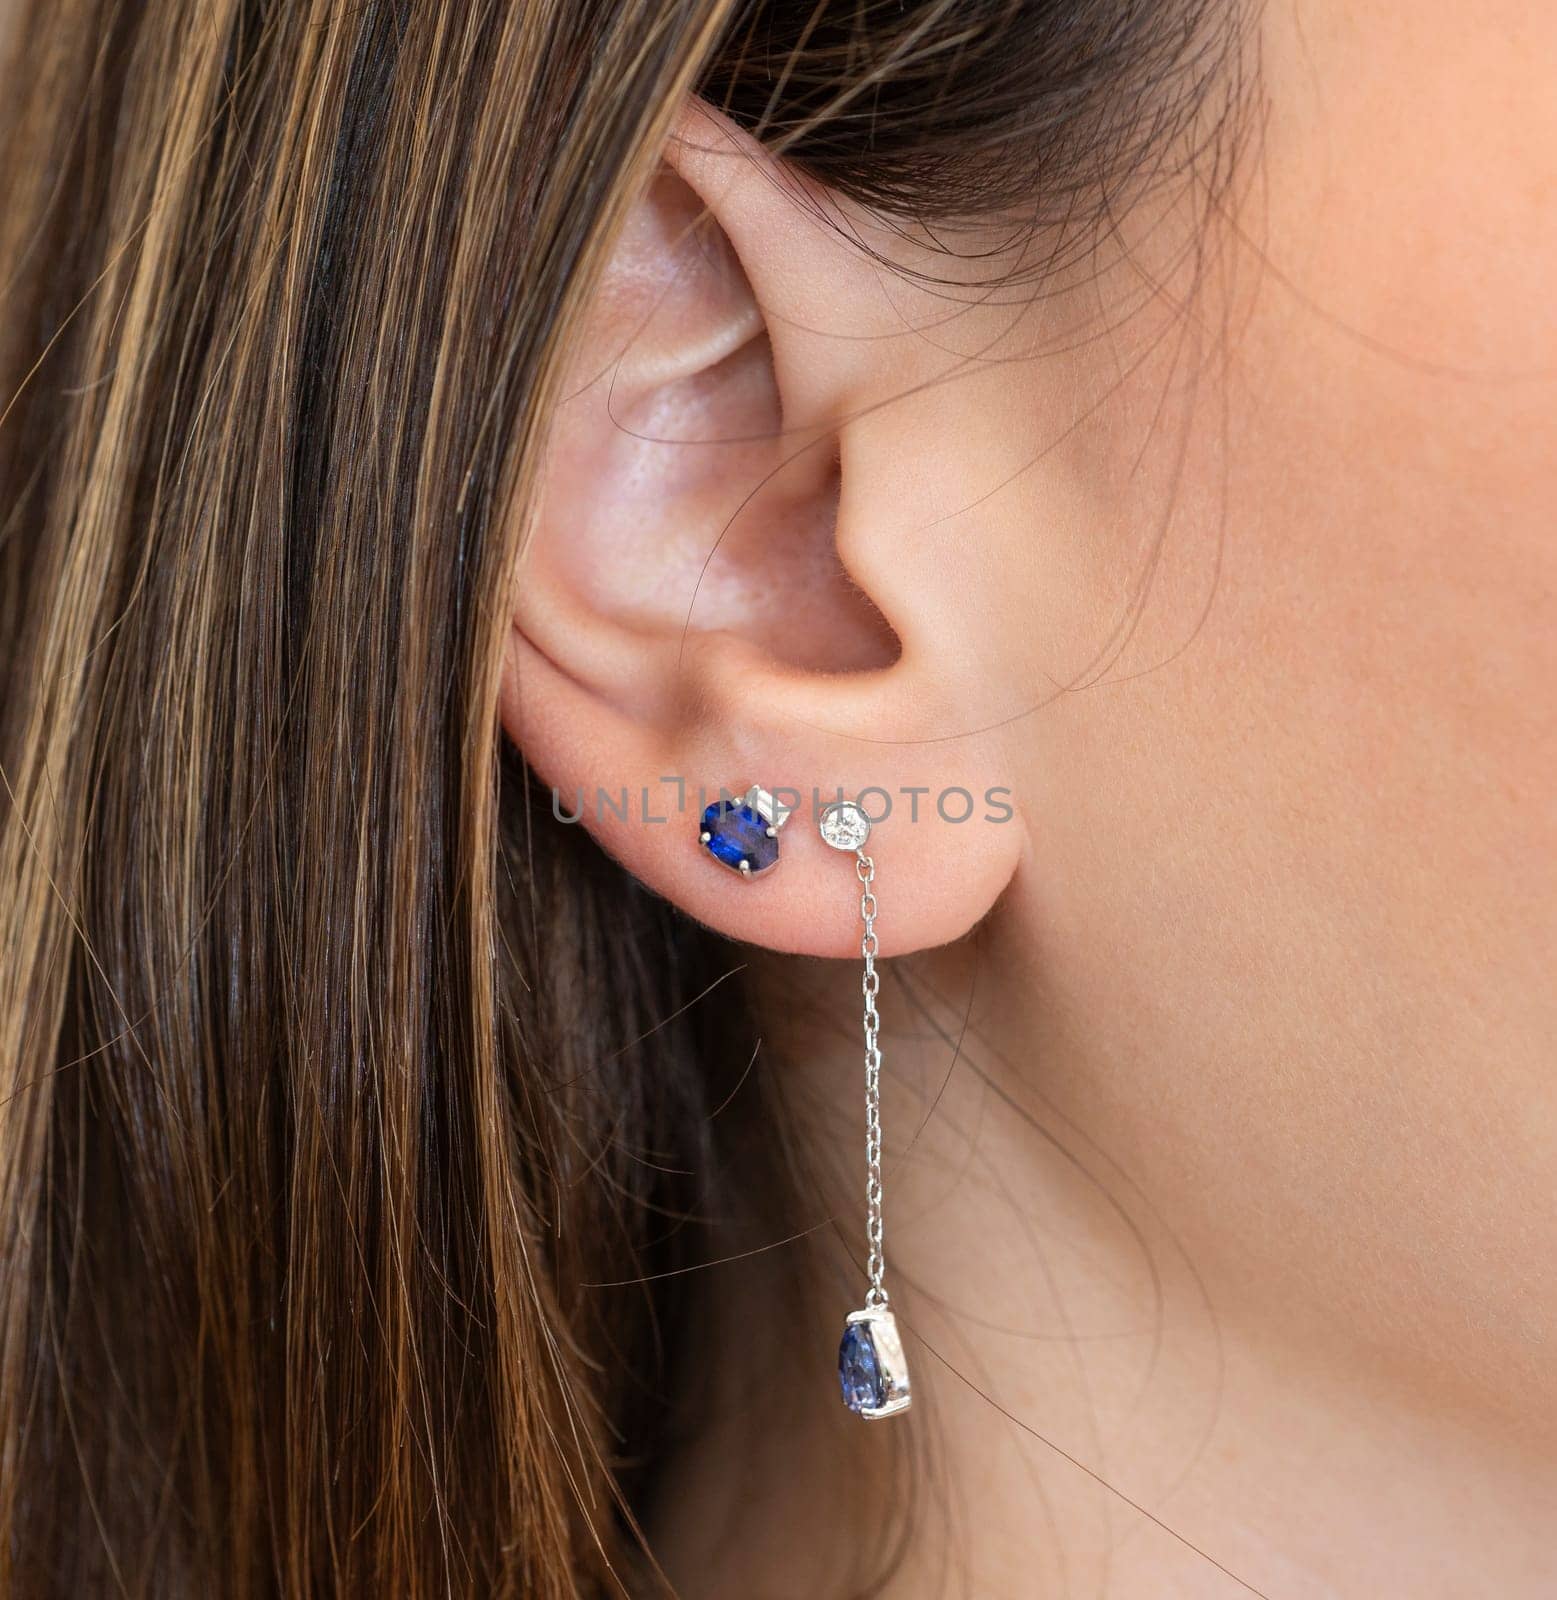 Closeup of womans ear with luxury earrings jewelry by paulvinten